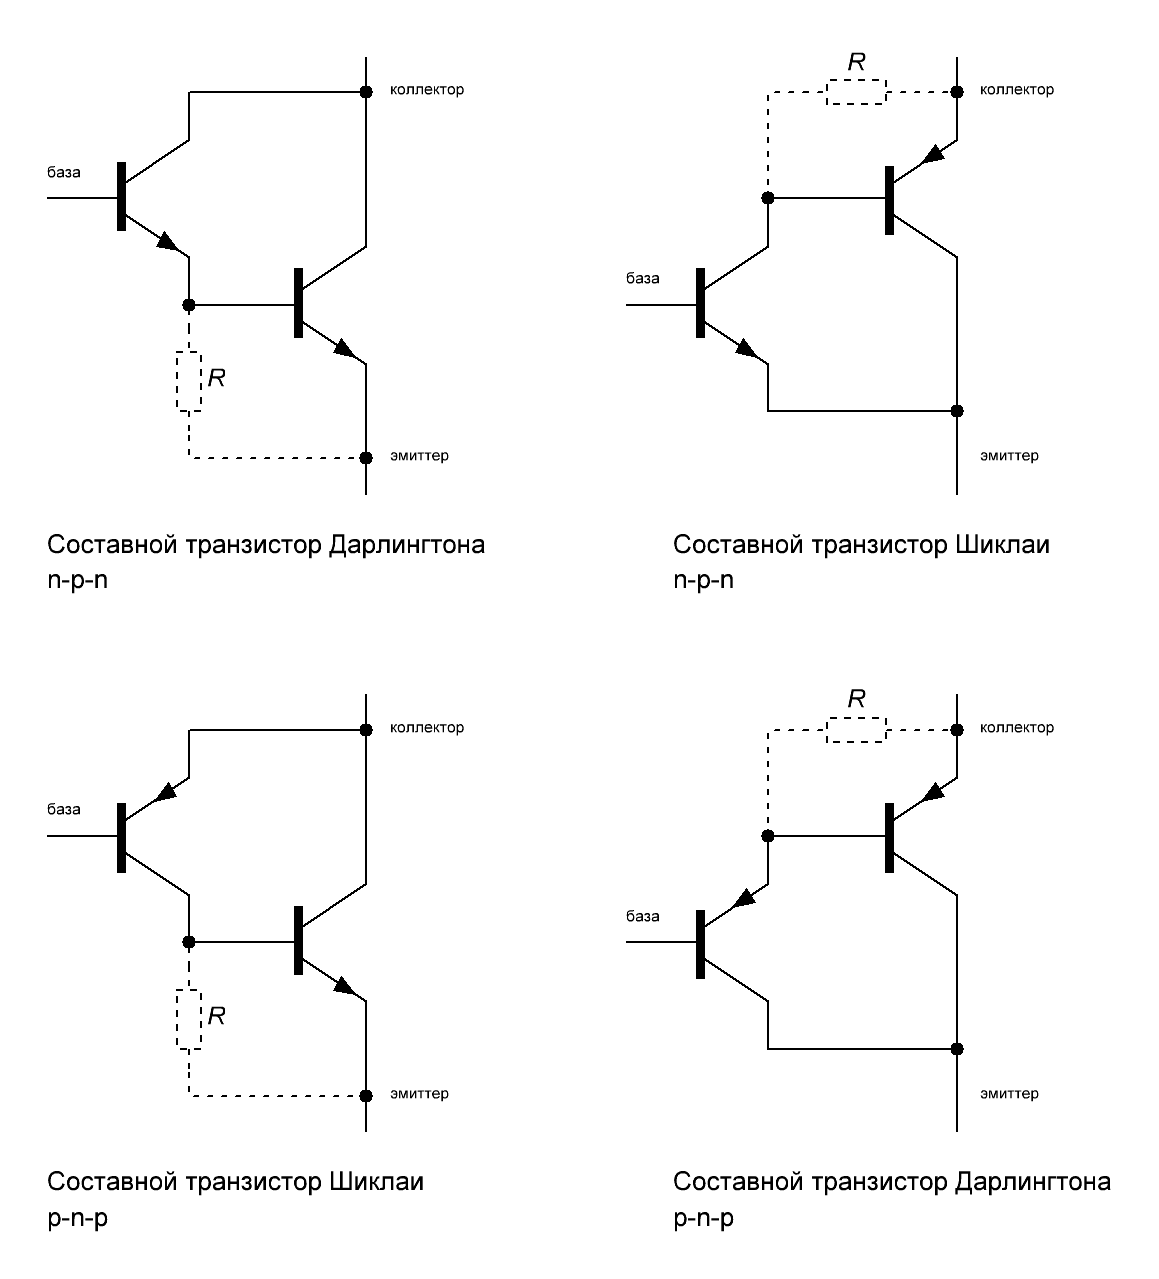 Составные транзисторы Дарлингтона и Шиклаи